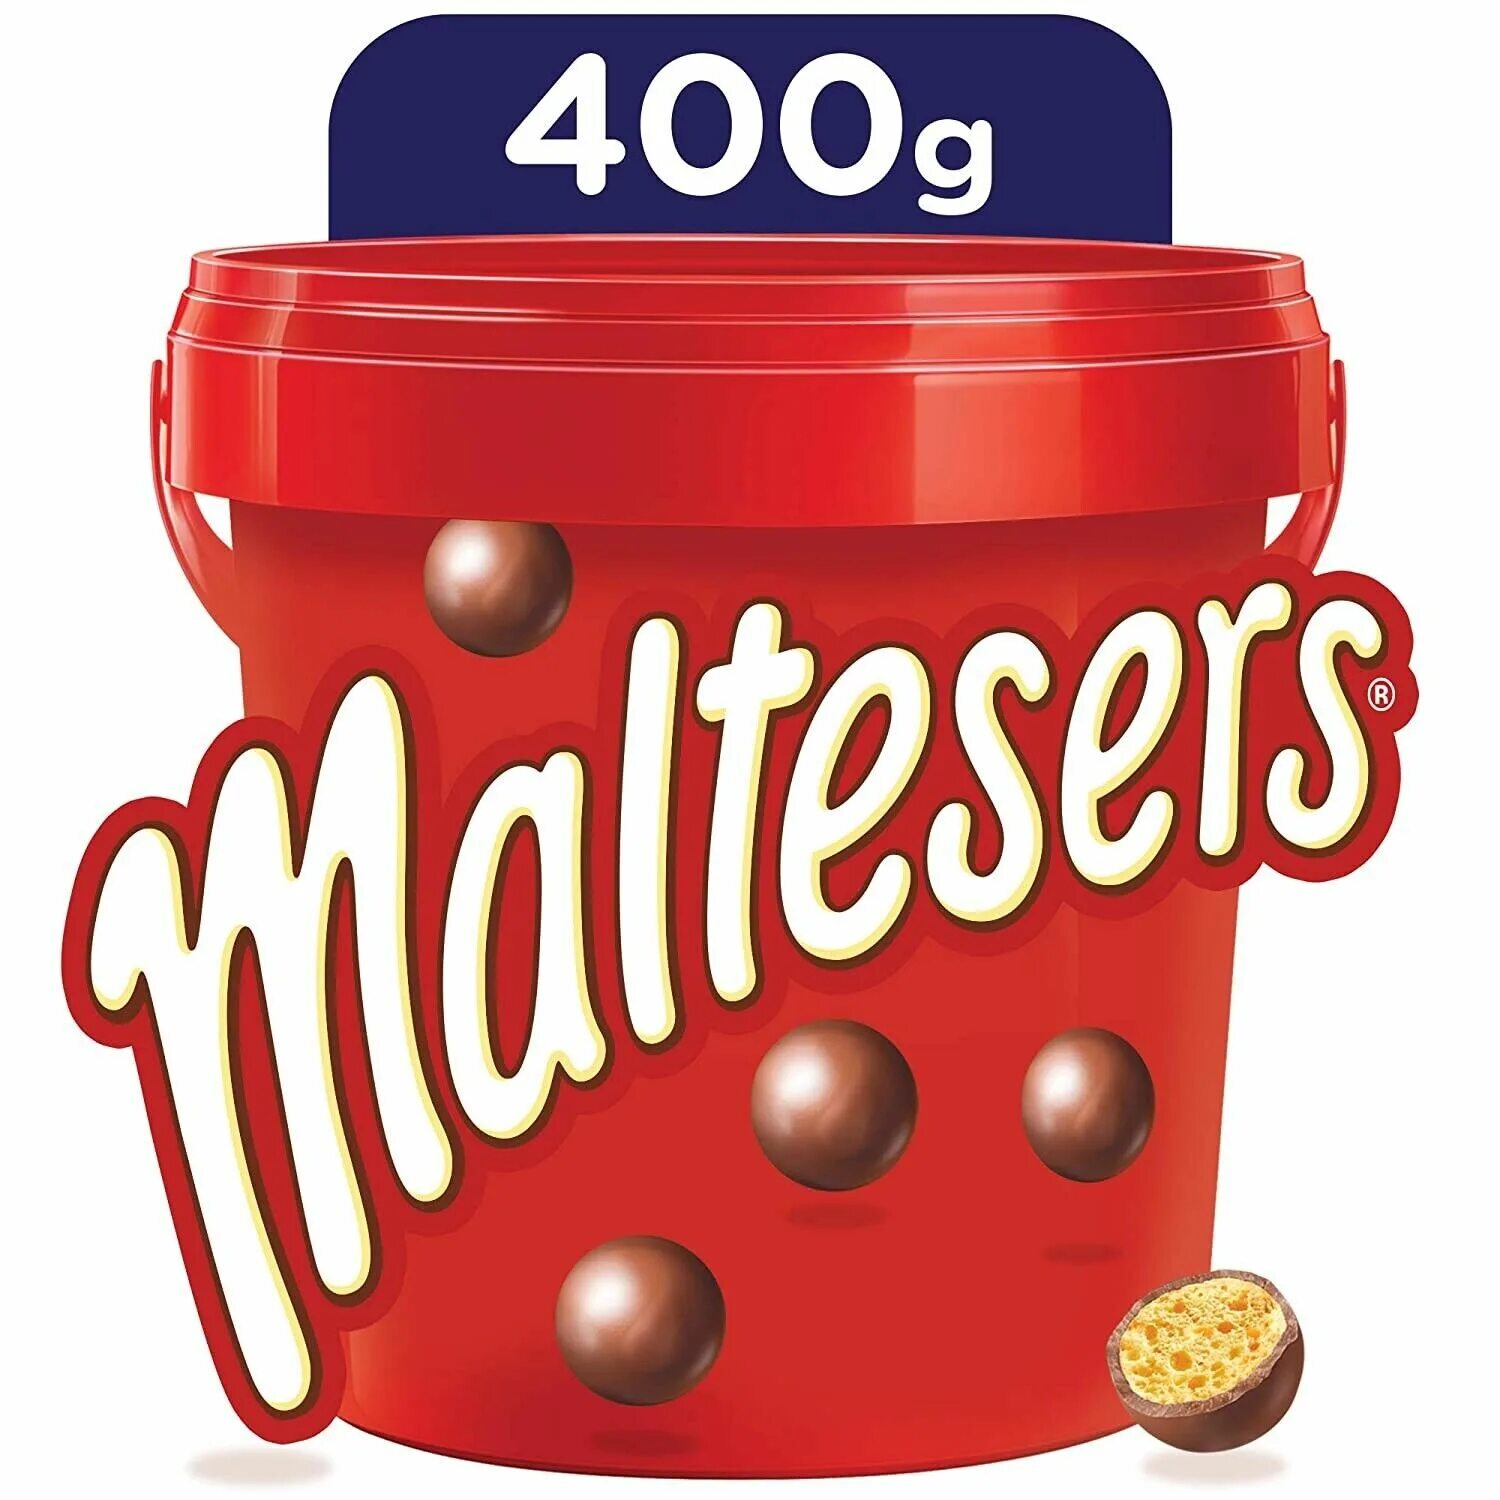 Шоколадные шарики Maltesers ведро. Шоколадные конфеты Maltesers. Шоколадное драже Мальтизерс. Конфеты Maltesers шоколадные шарики.